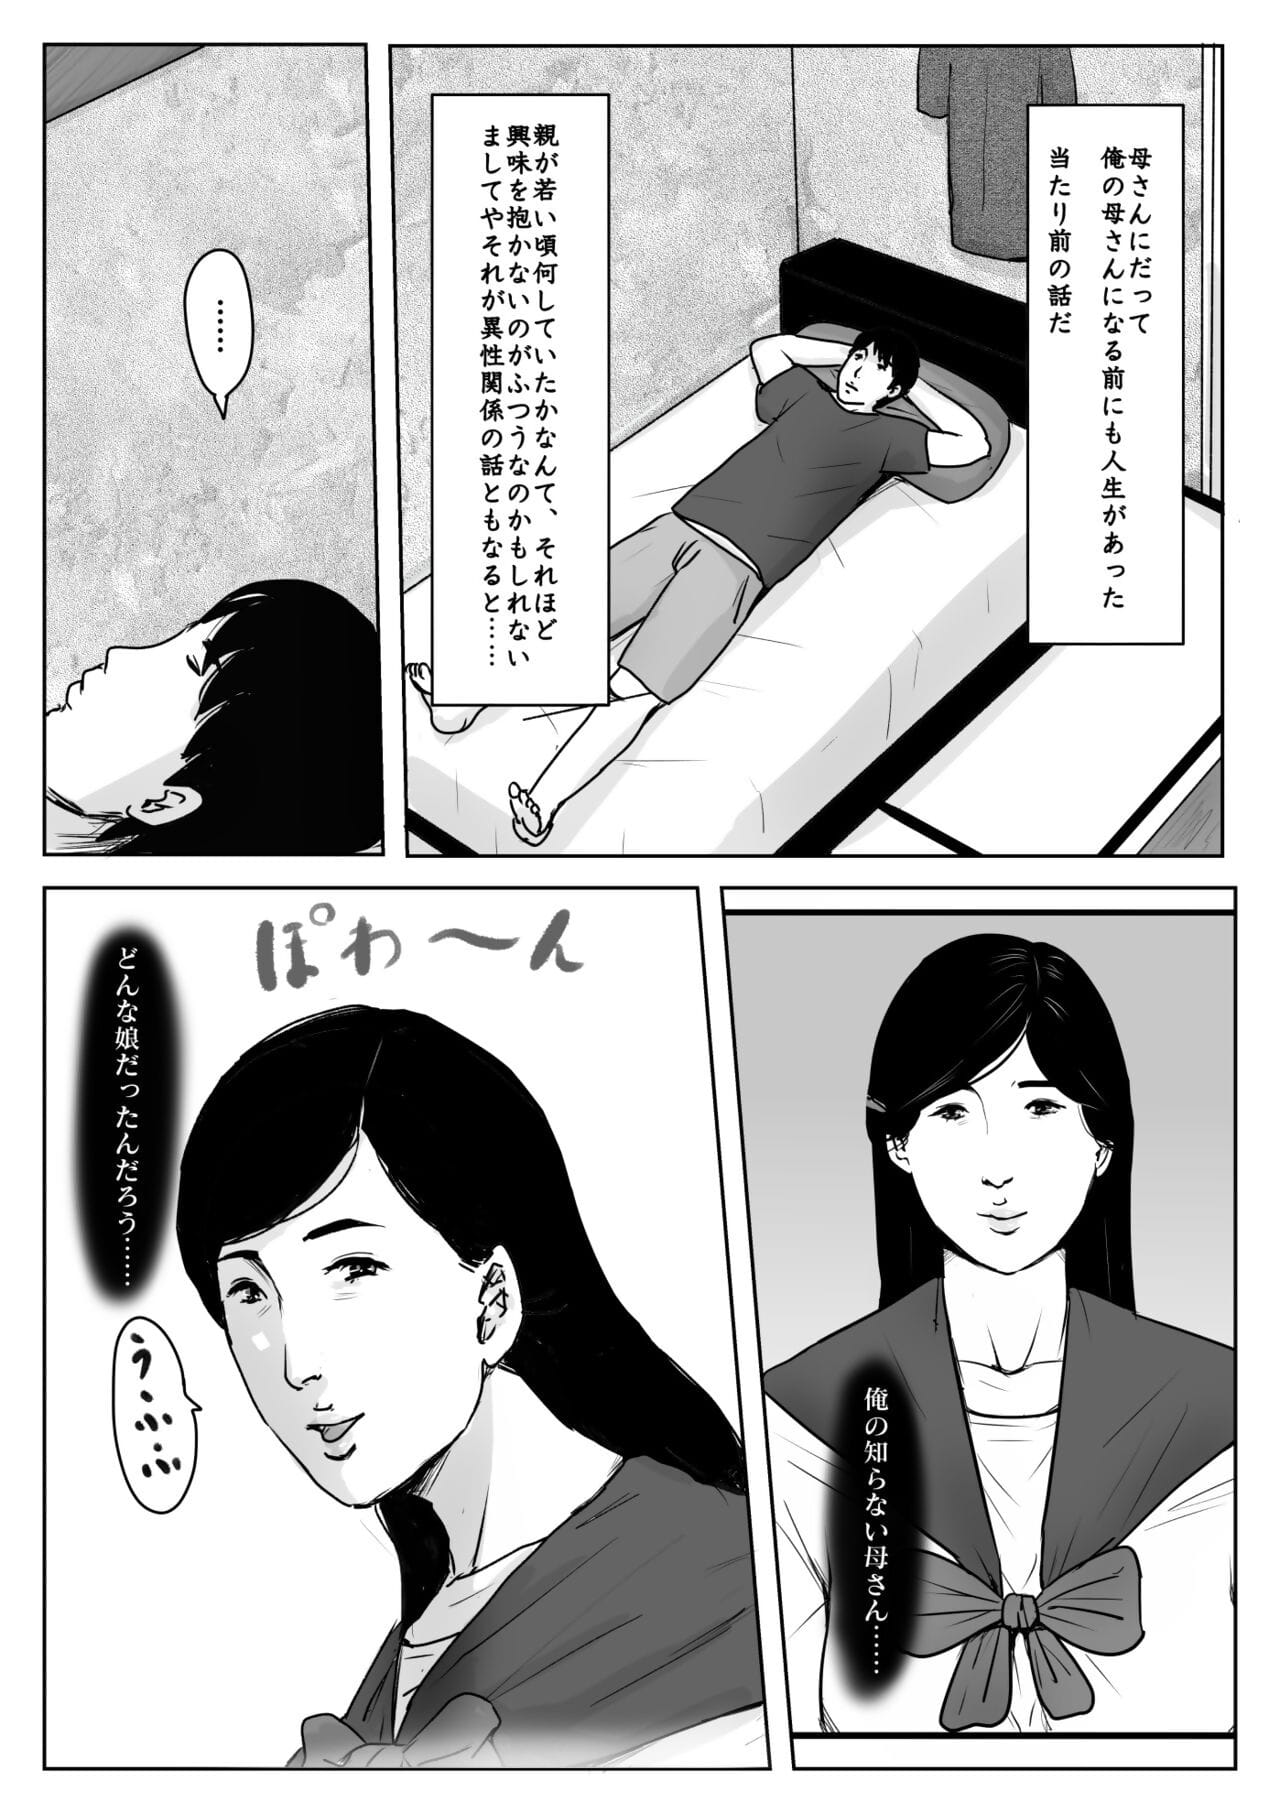 jaja NI koishite #3 omoide no natsu page 1